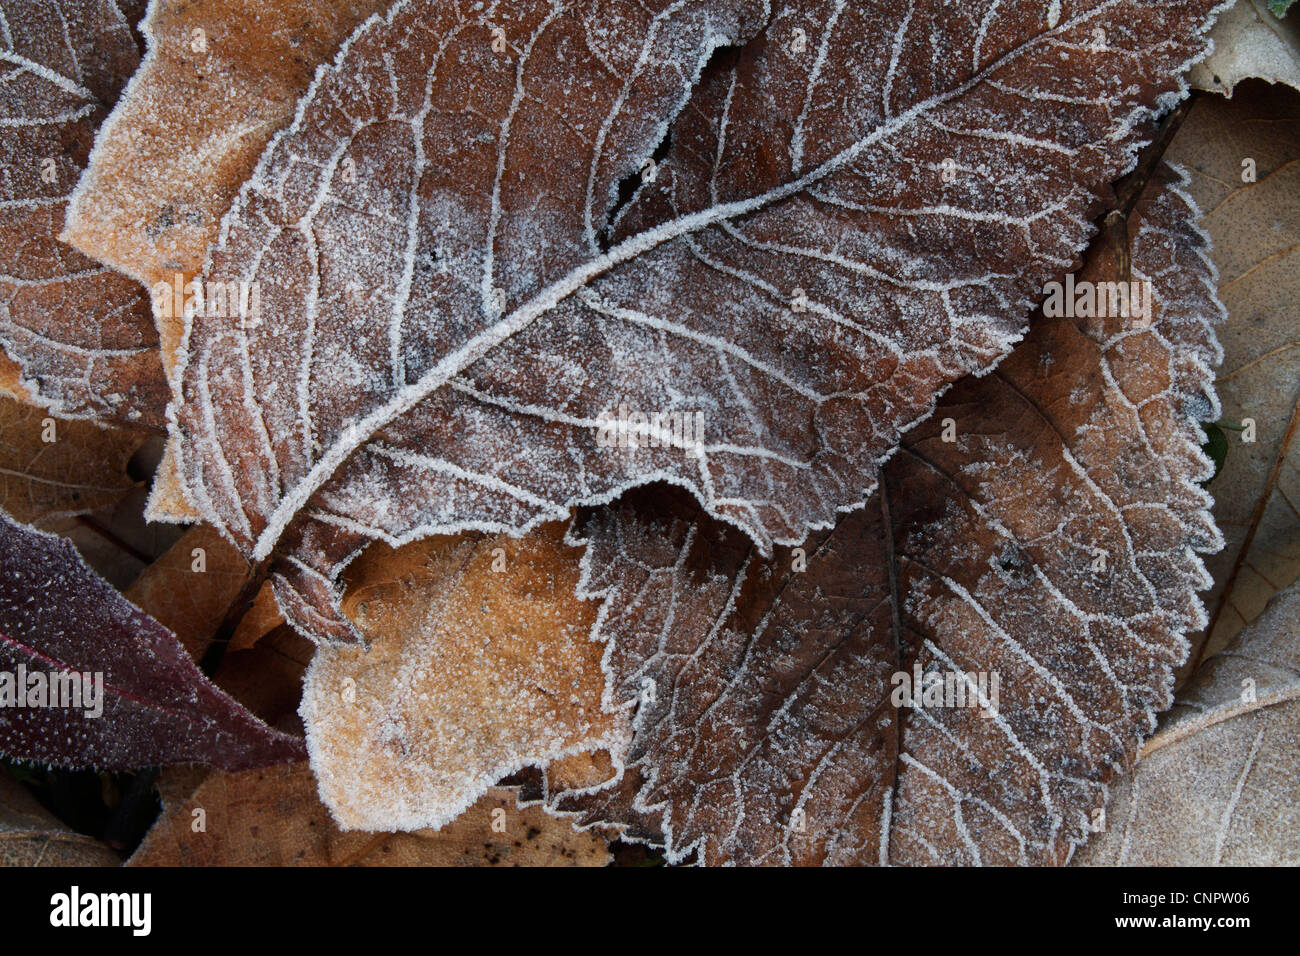 Una composición de diversos tipos de hojas congelada, tomada en una fría mañana de invierno. Foto de stock